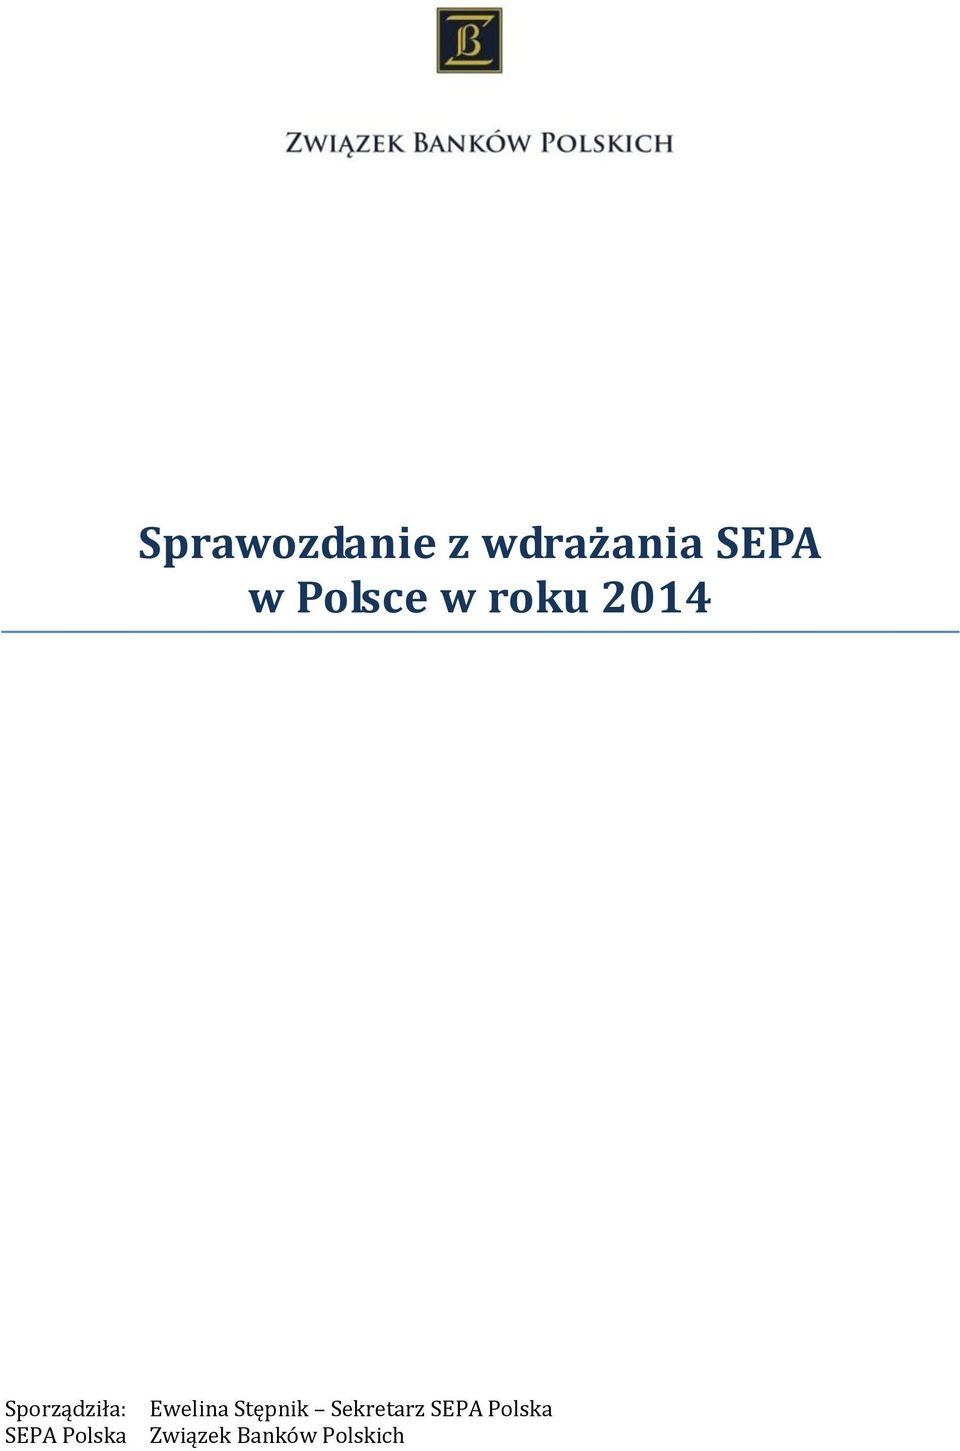 Sporządziła: SEPA Polska